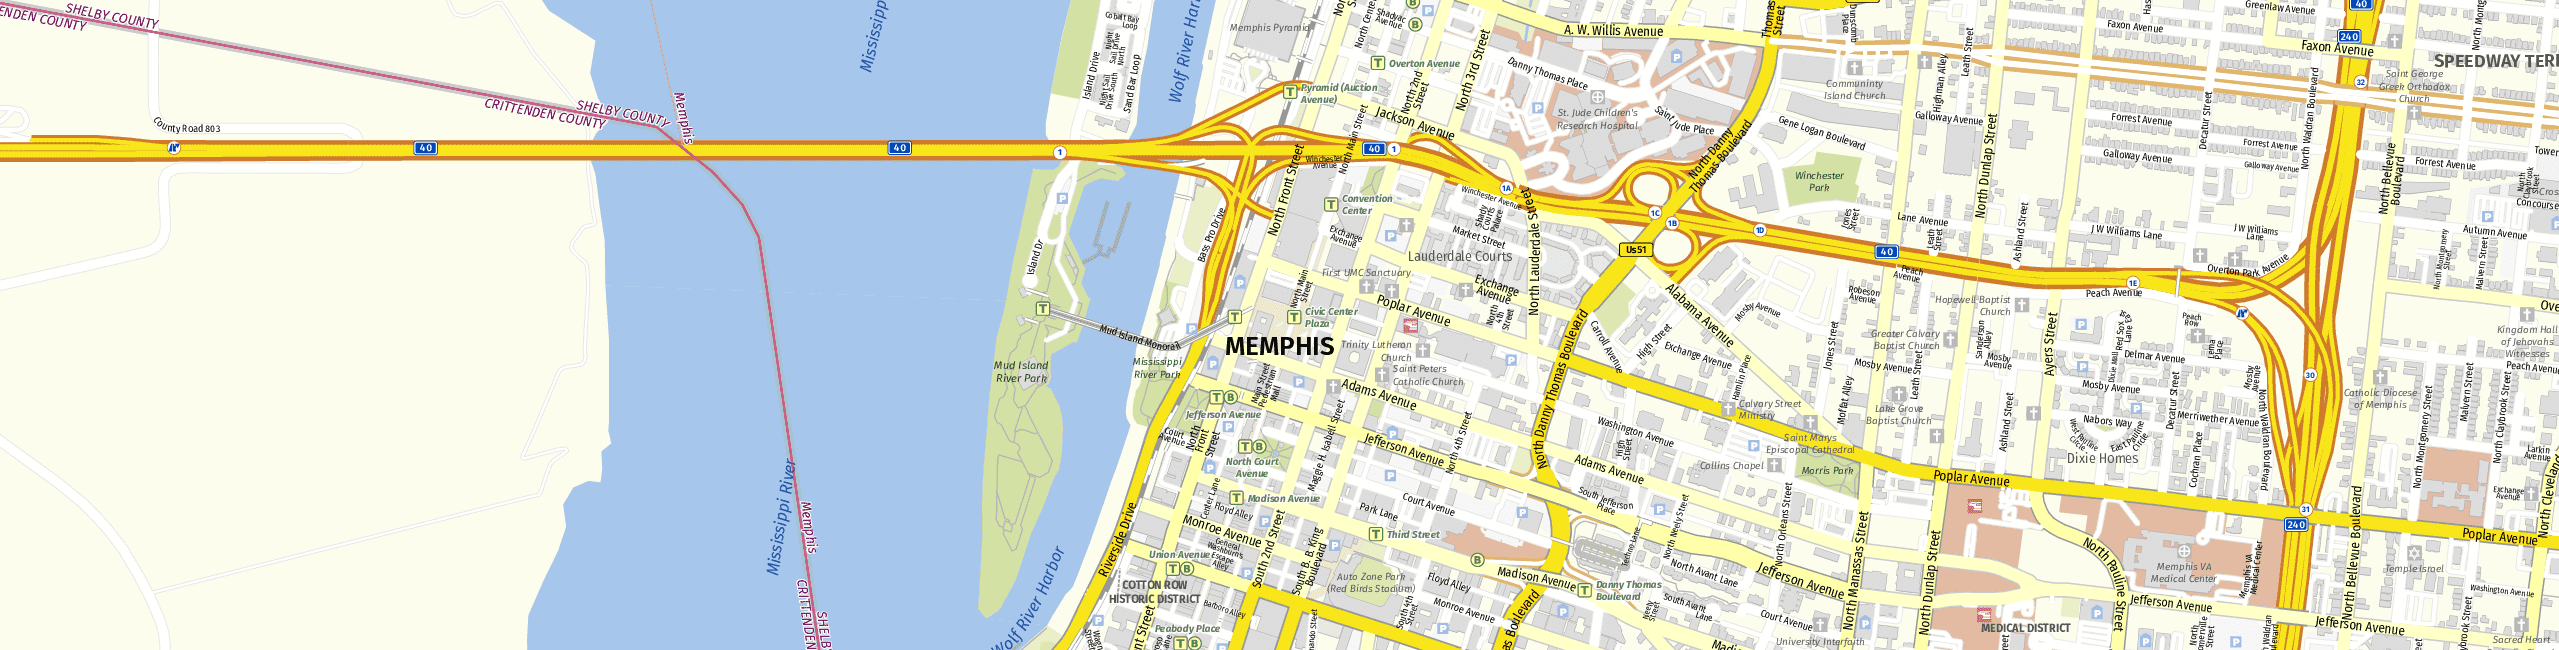 Stadtplan Memphis zum Downloaden.